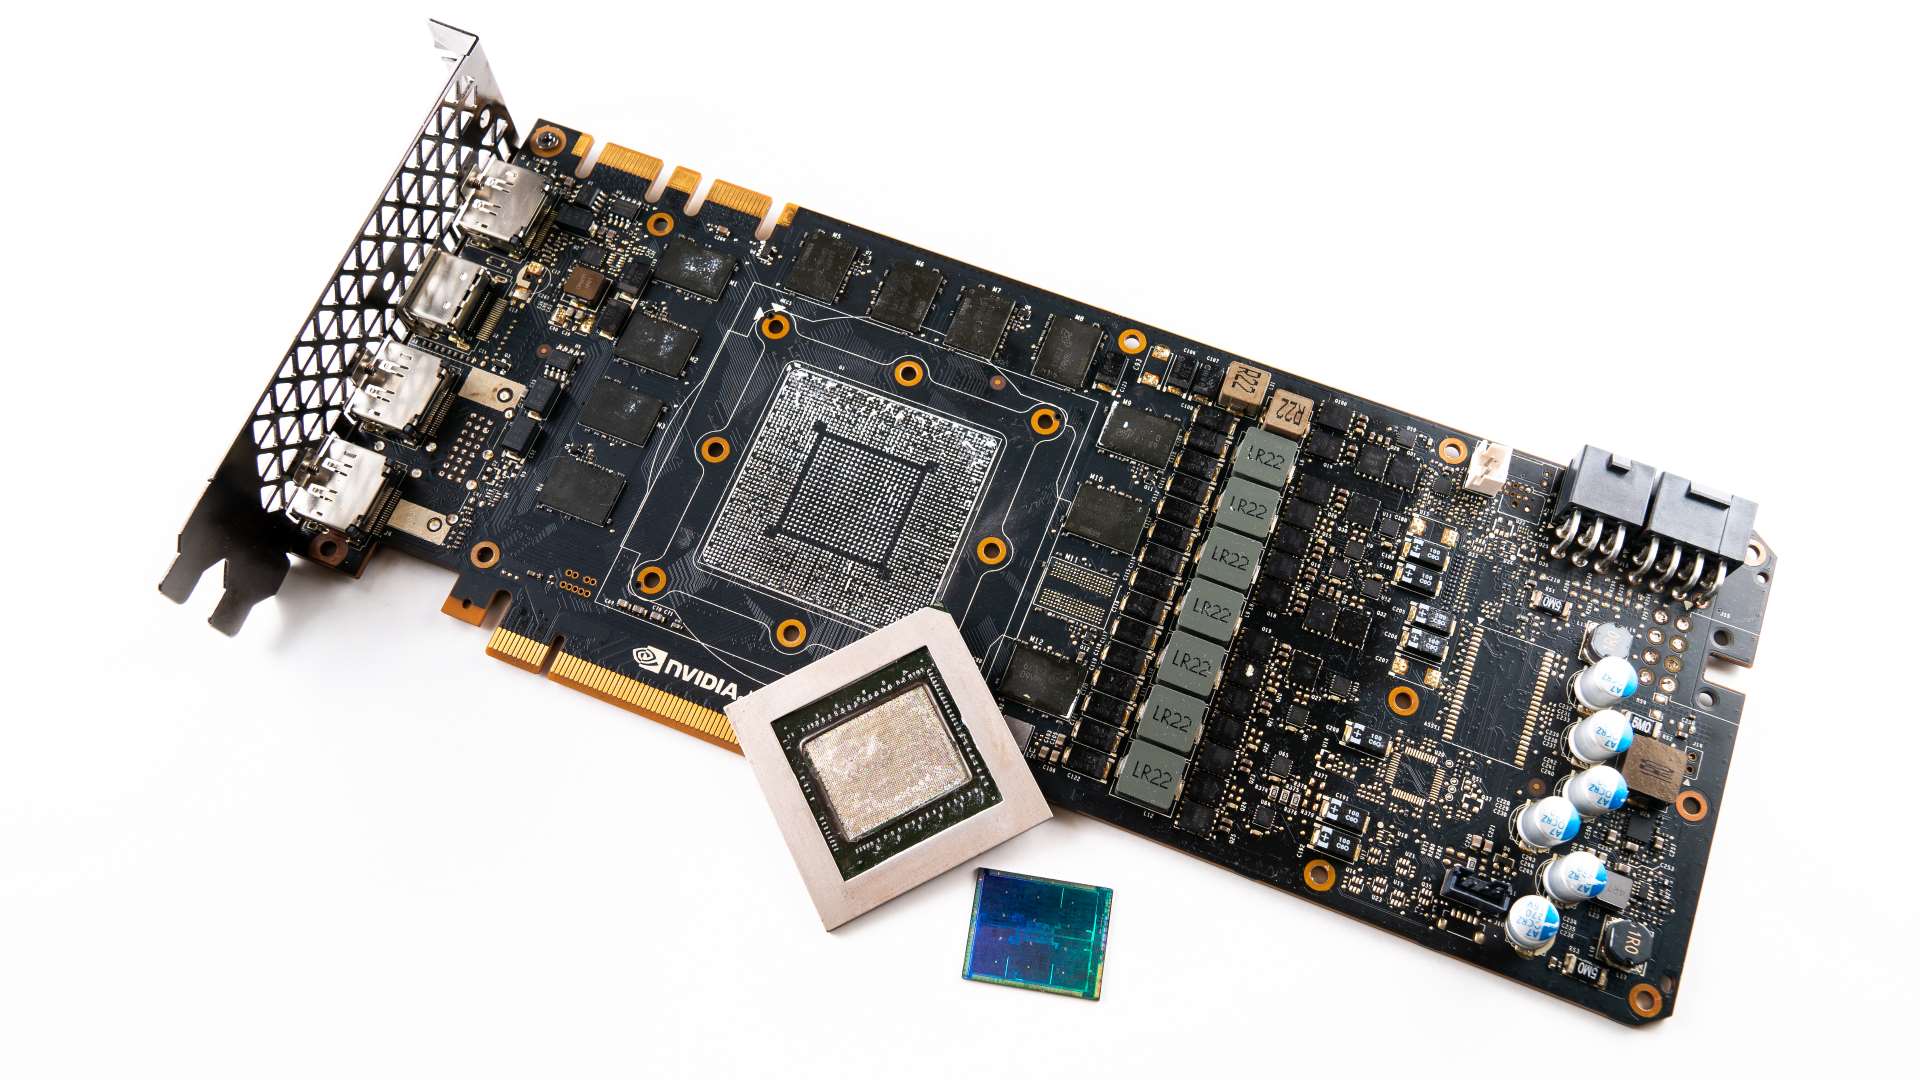 Lihat Nvidia dan AMD ... Pembuat GPU Cina memiliki kartu 1080-level GTX dalam pengembangan